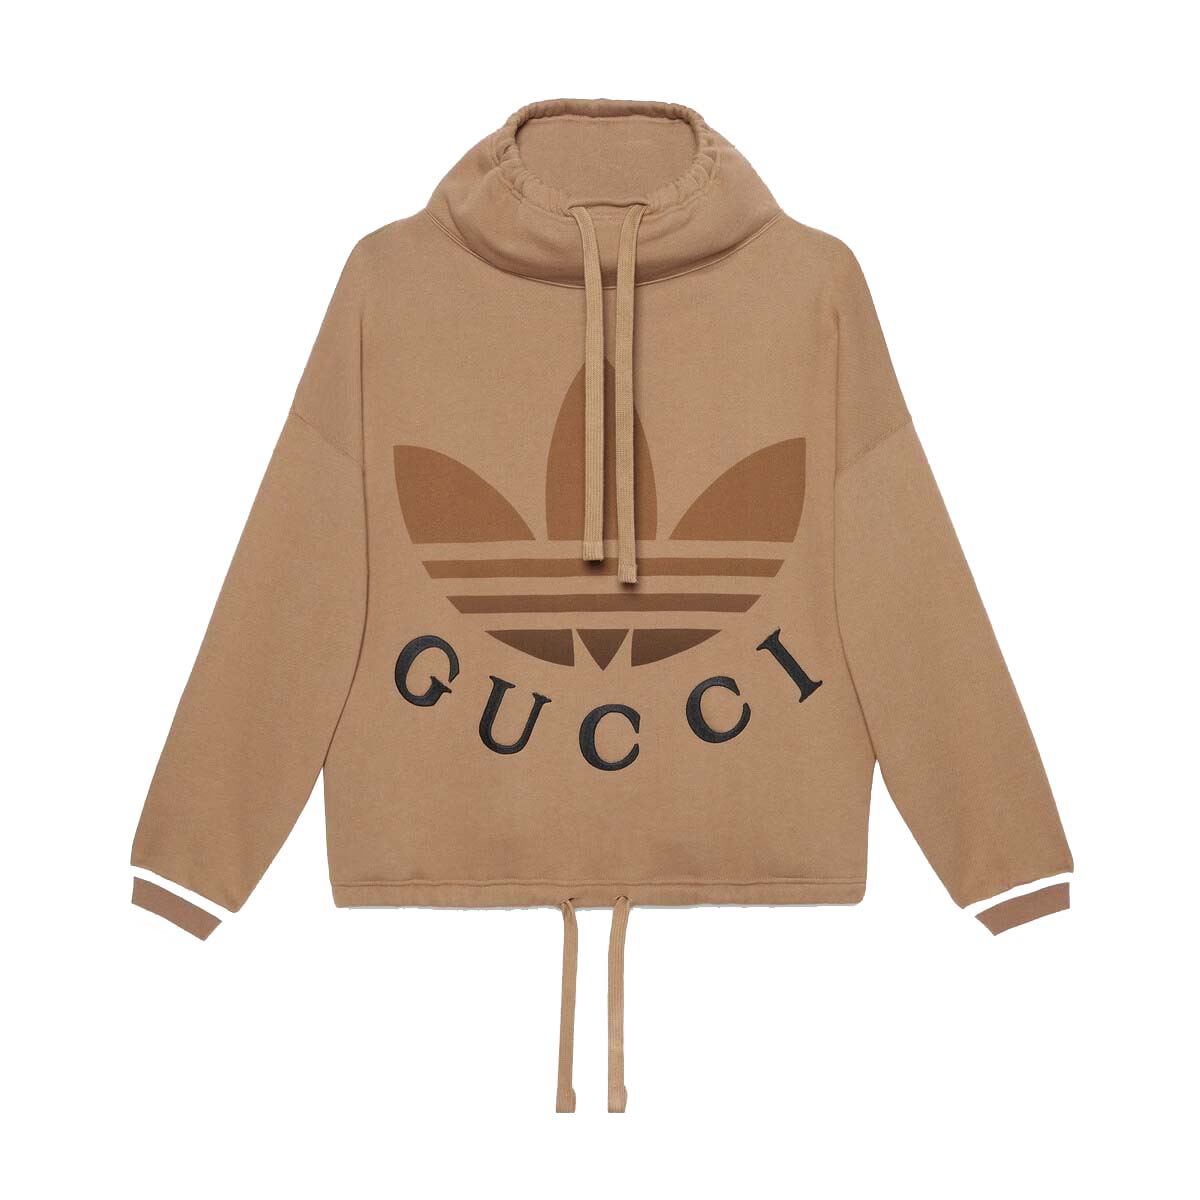 Gucci x adidas Cotton Jersey Sweatshirt Dark Beige